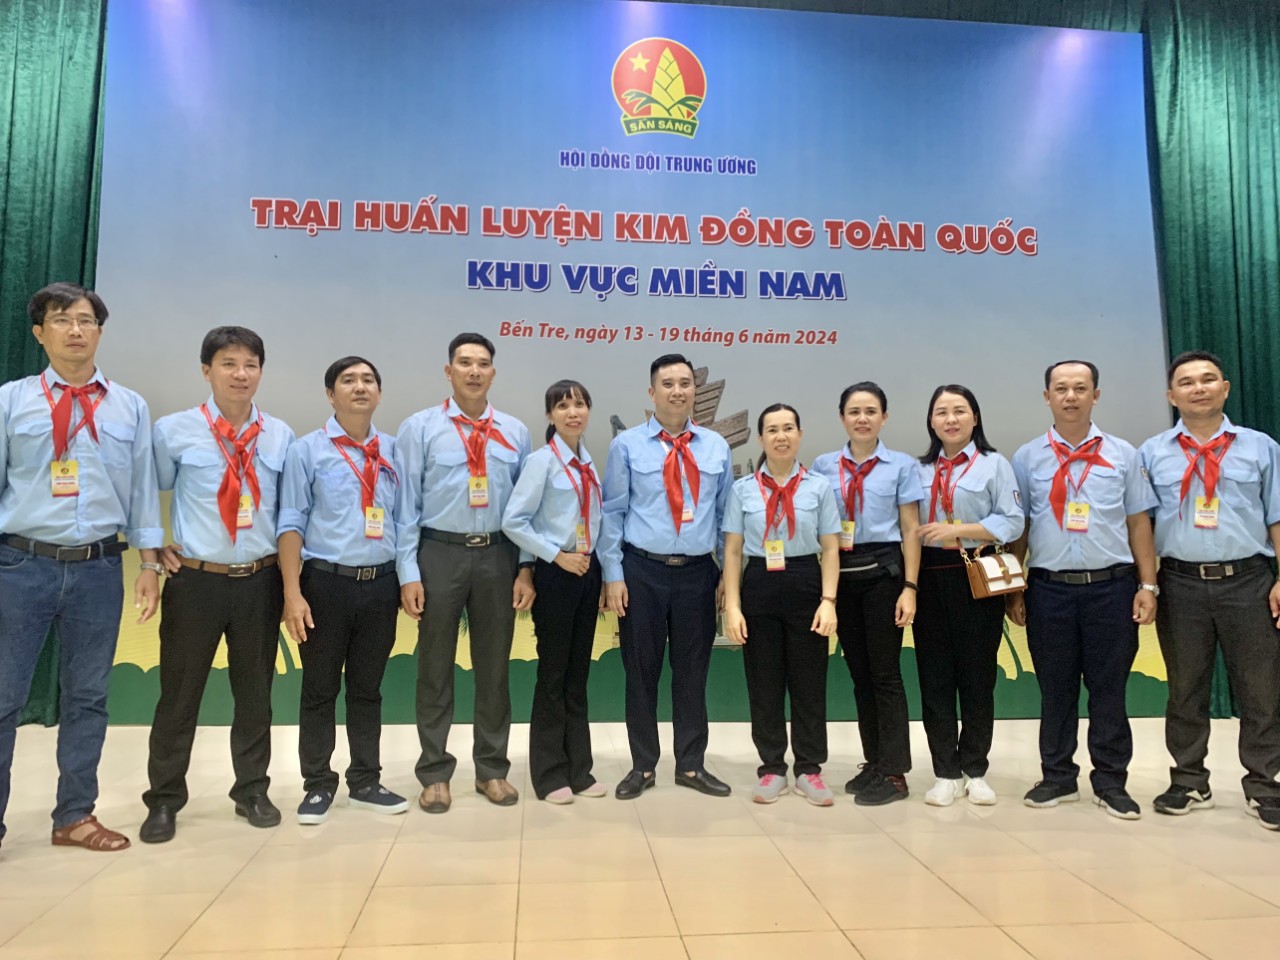 Các Giáo viên - Tổng phụ trách Đội tỉnh Phú Yên tham gia Trại huấn luyện Kim Đồng khu vực miền Nam năm 2024